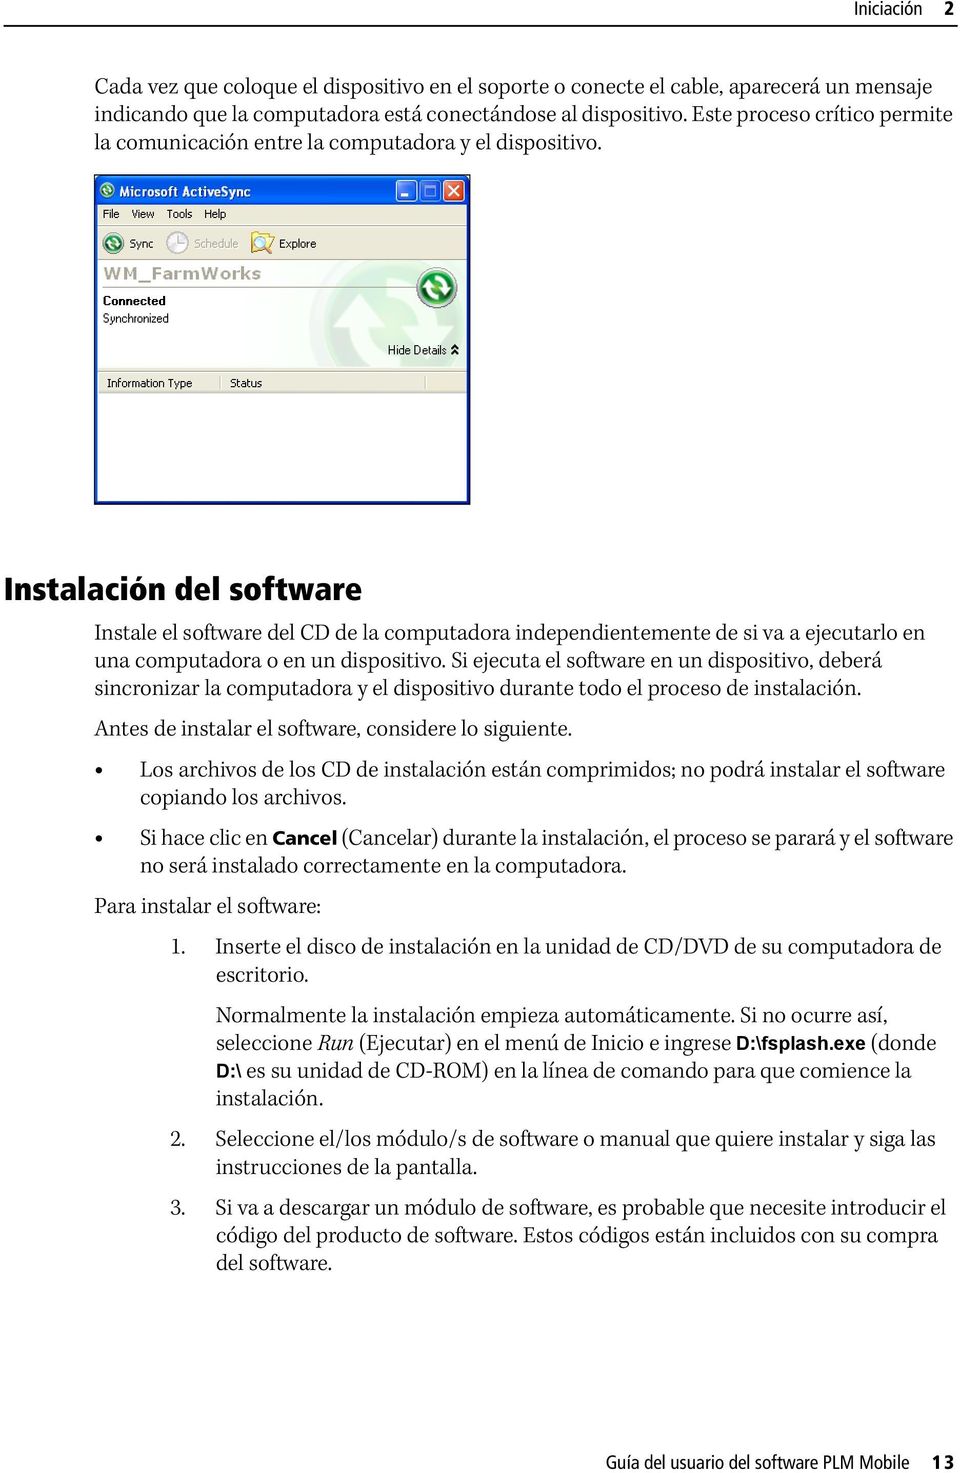 Instalación del software Instale el software del CD de la computadora independientemente de si va a ejecutarlo en una computadora o en un dispositivo.